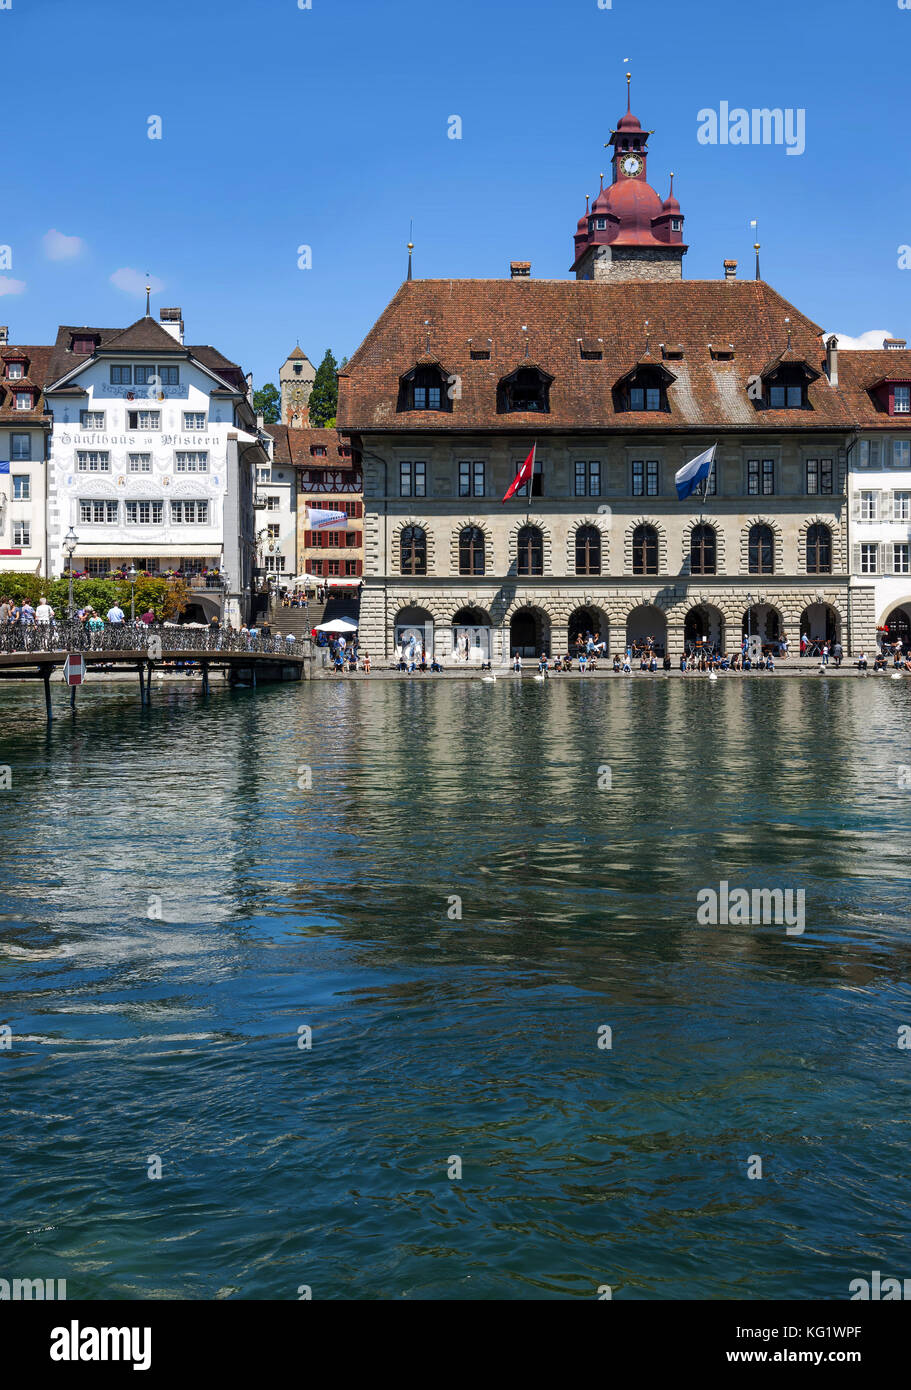 Luzern, Schweiz :  Rathaus - Zunfthaus zur Pfistern - Rathaus-Steg - Reuss - Zytturm Stock Photo